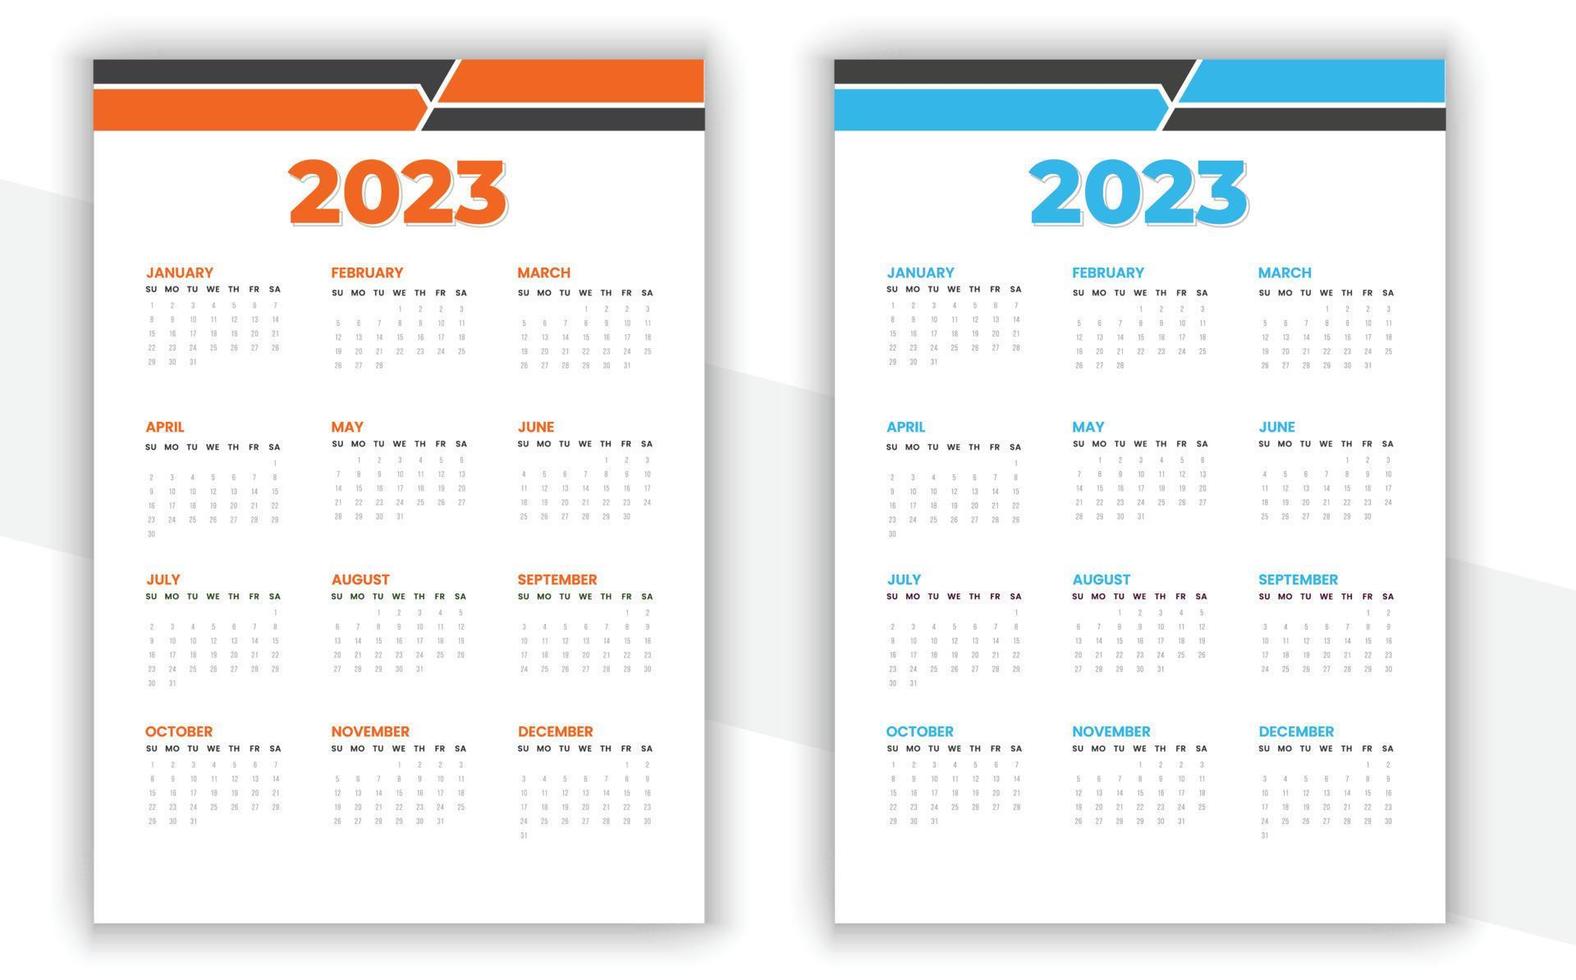 2023 Wall Calendar Design vector